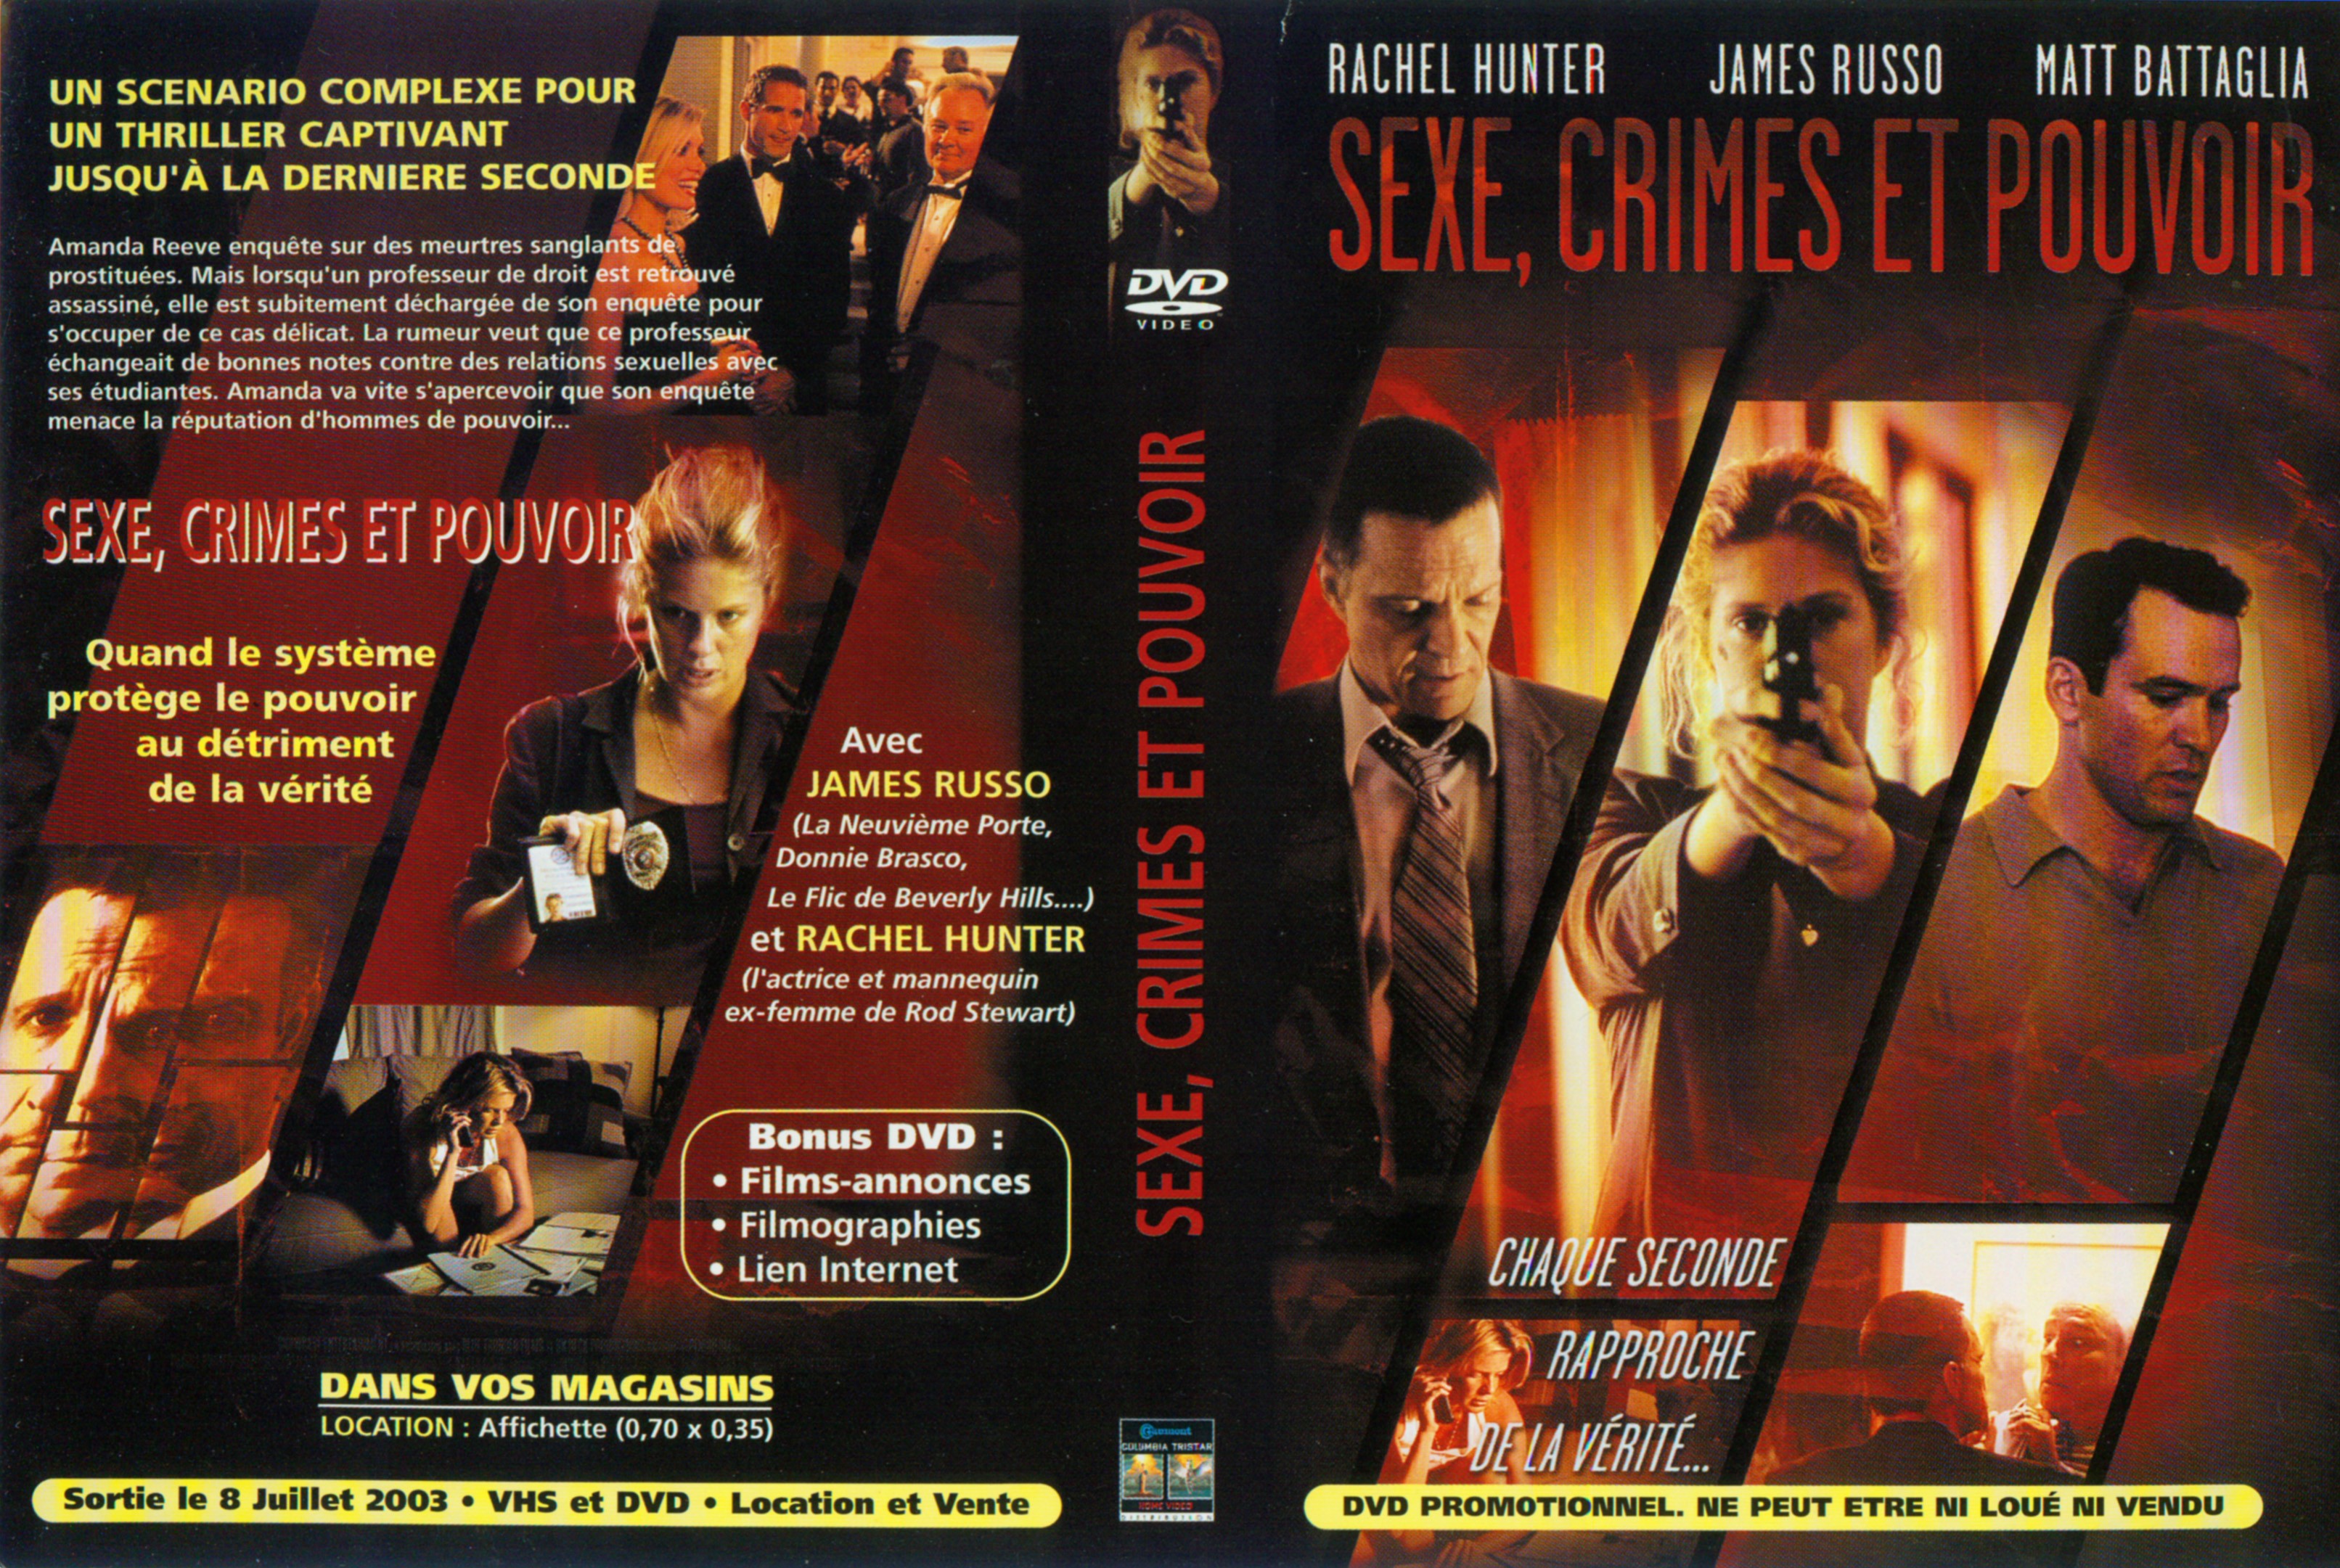 Jaquette DVD Sexe crimes et pouvoir